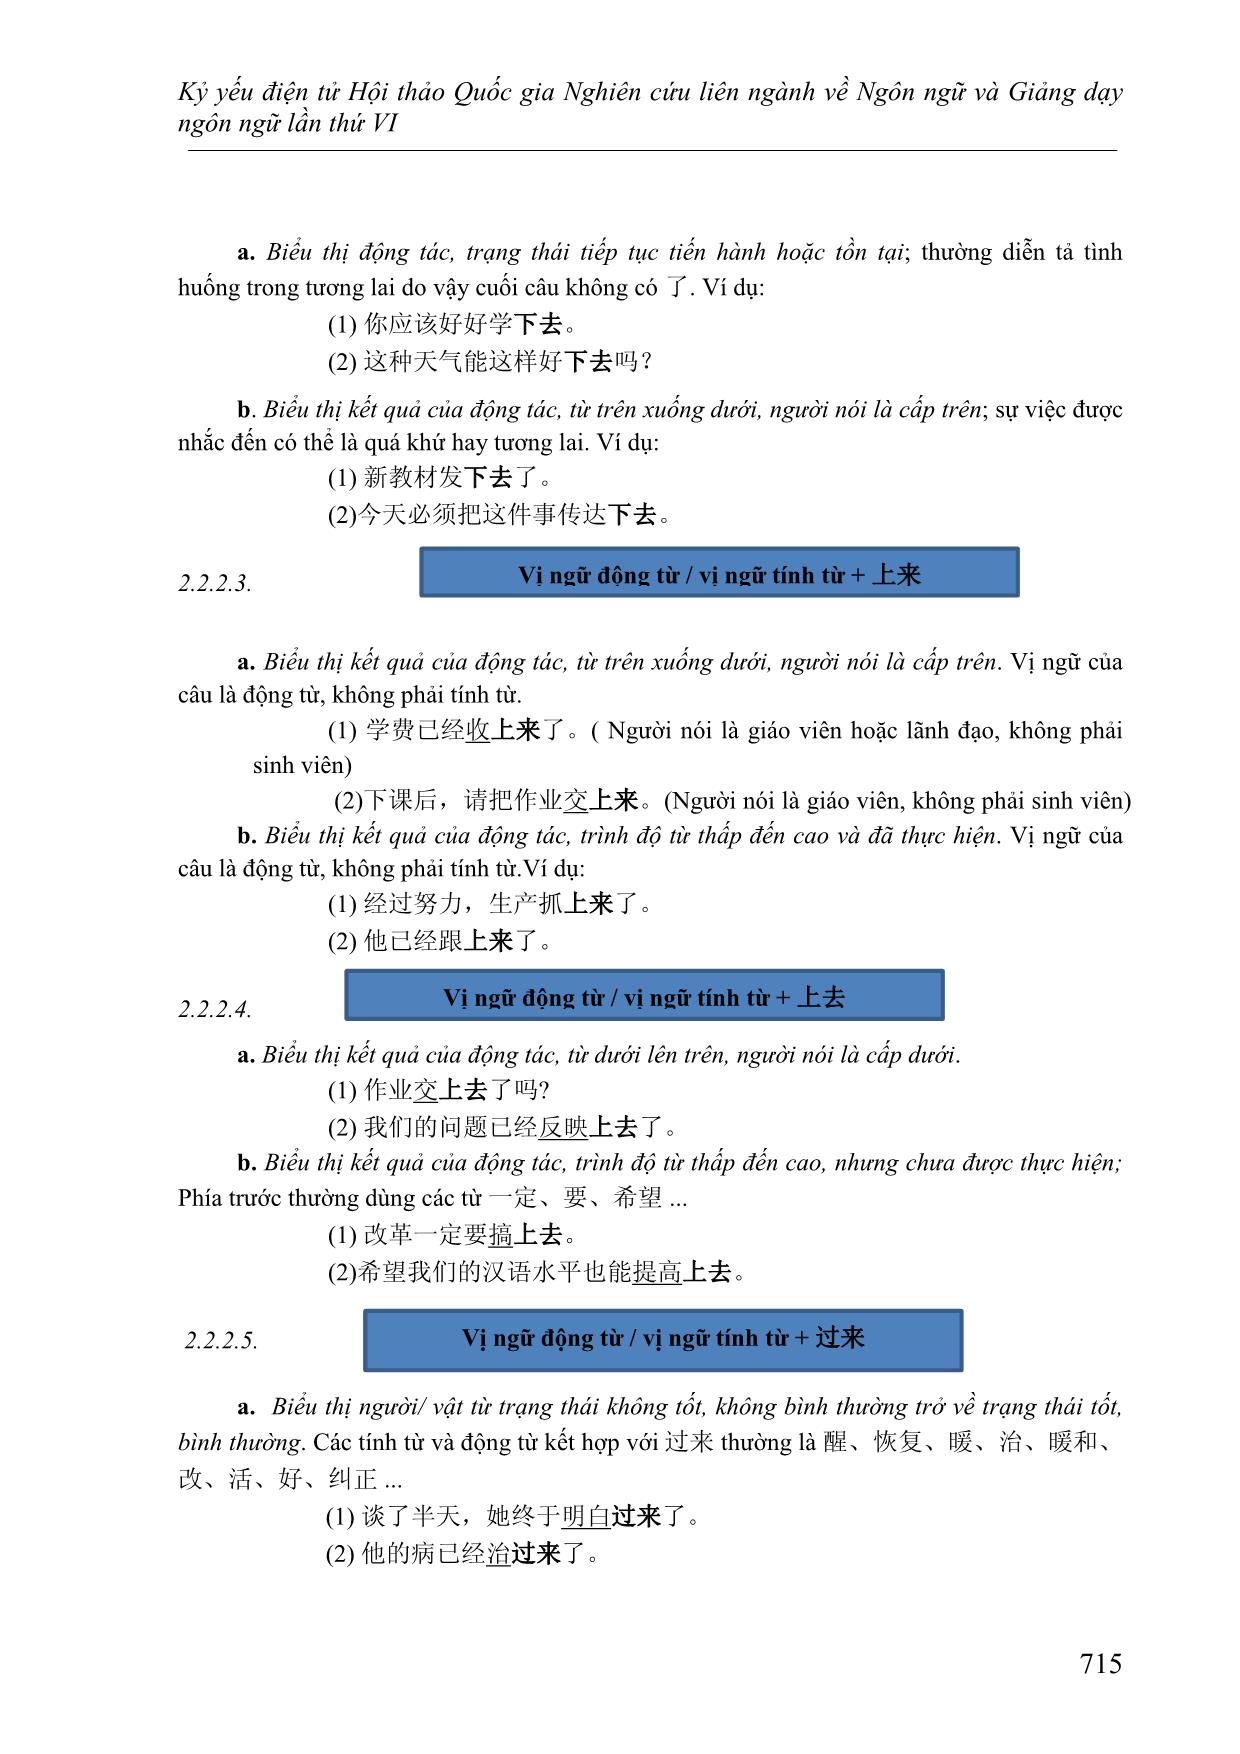 Cách dùng linh hoạt của bổ ngữ xu hướng và cách xác định ý nghĩa của câu khi sử dụng bổ ngữ xu hướng kép 上来, 上去, 下来,下 trang 5